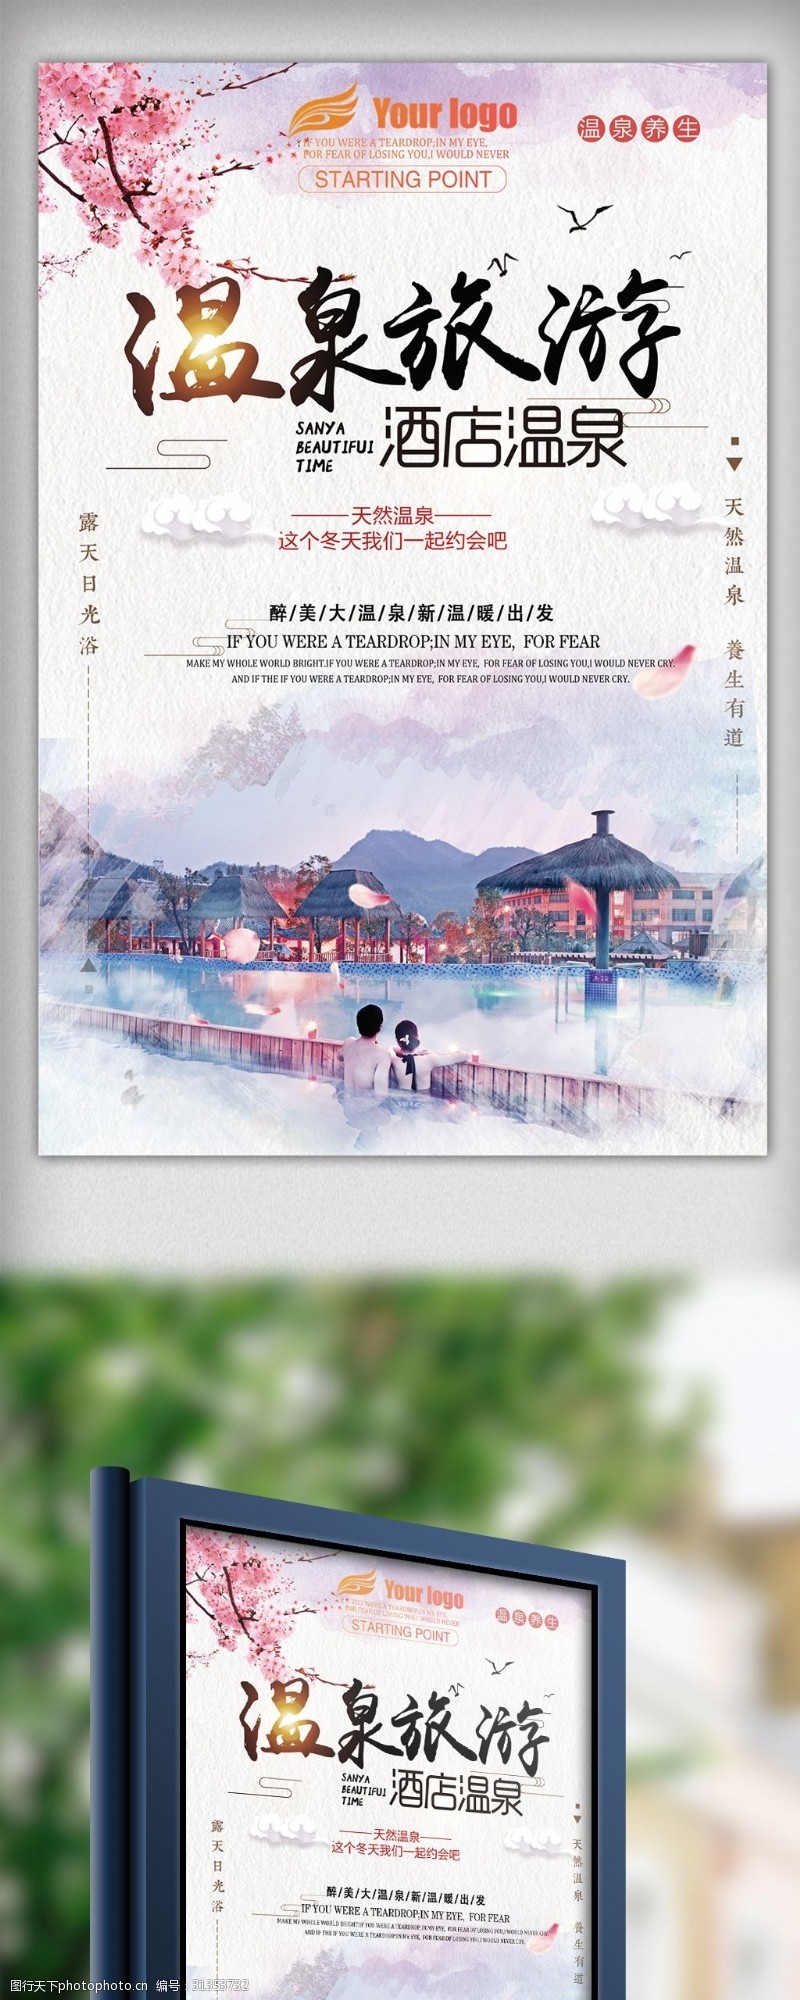 日本旅游广告创意冬季旅游泡温泉渡假宣传海报